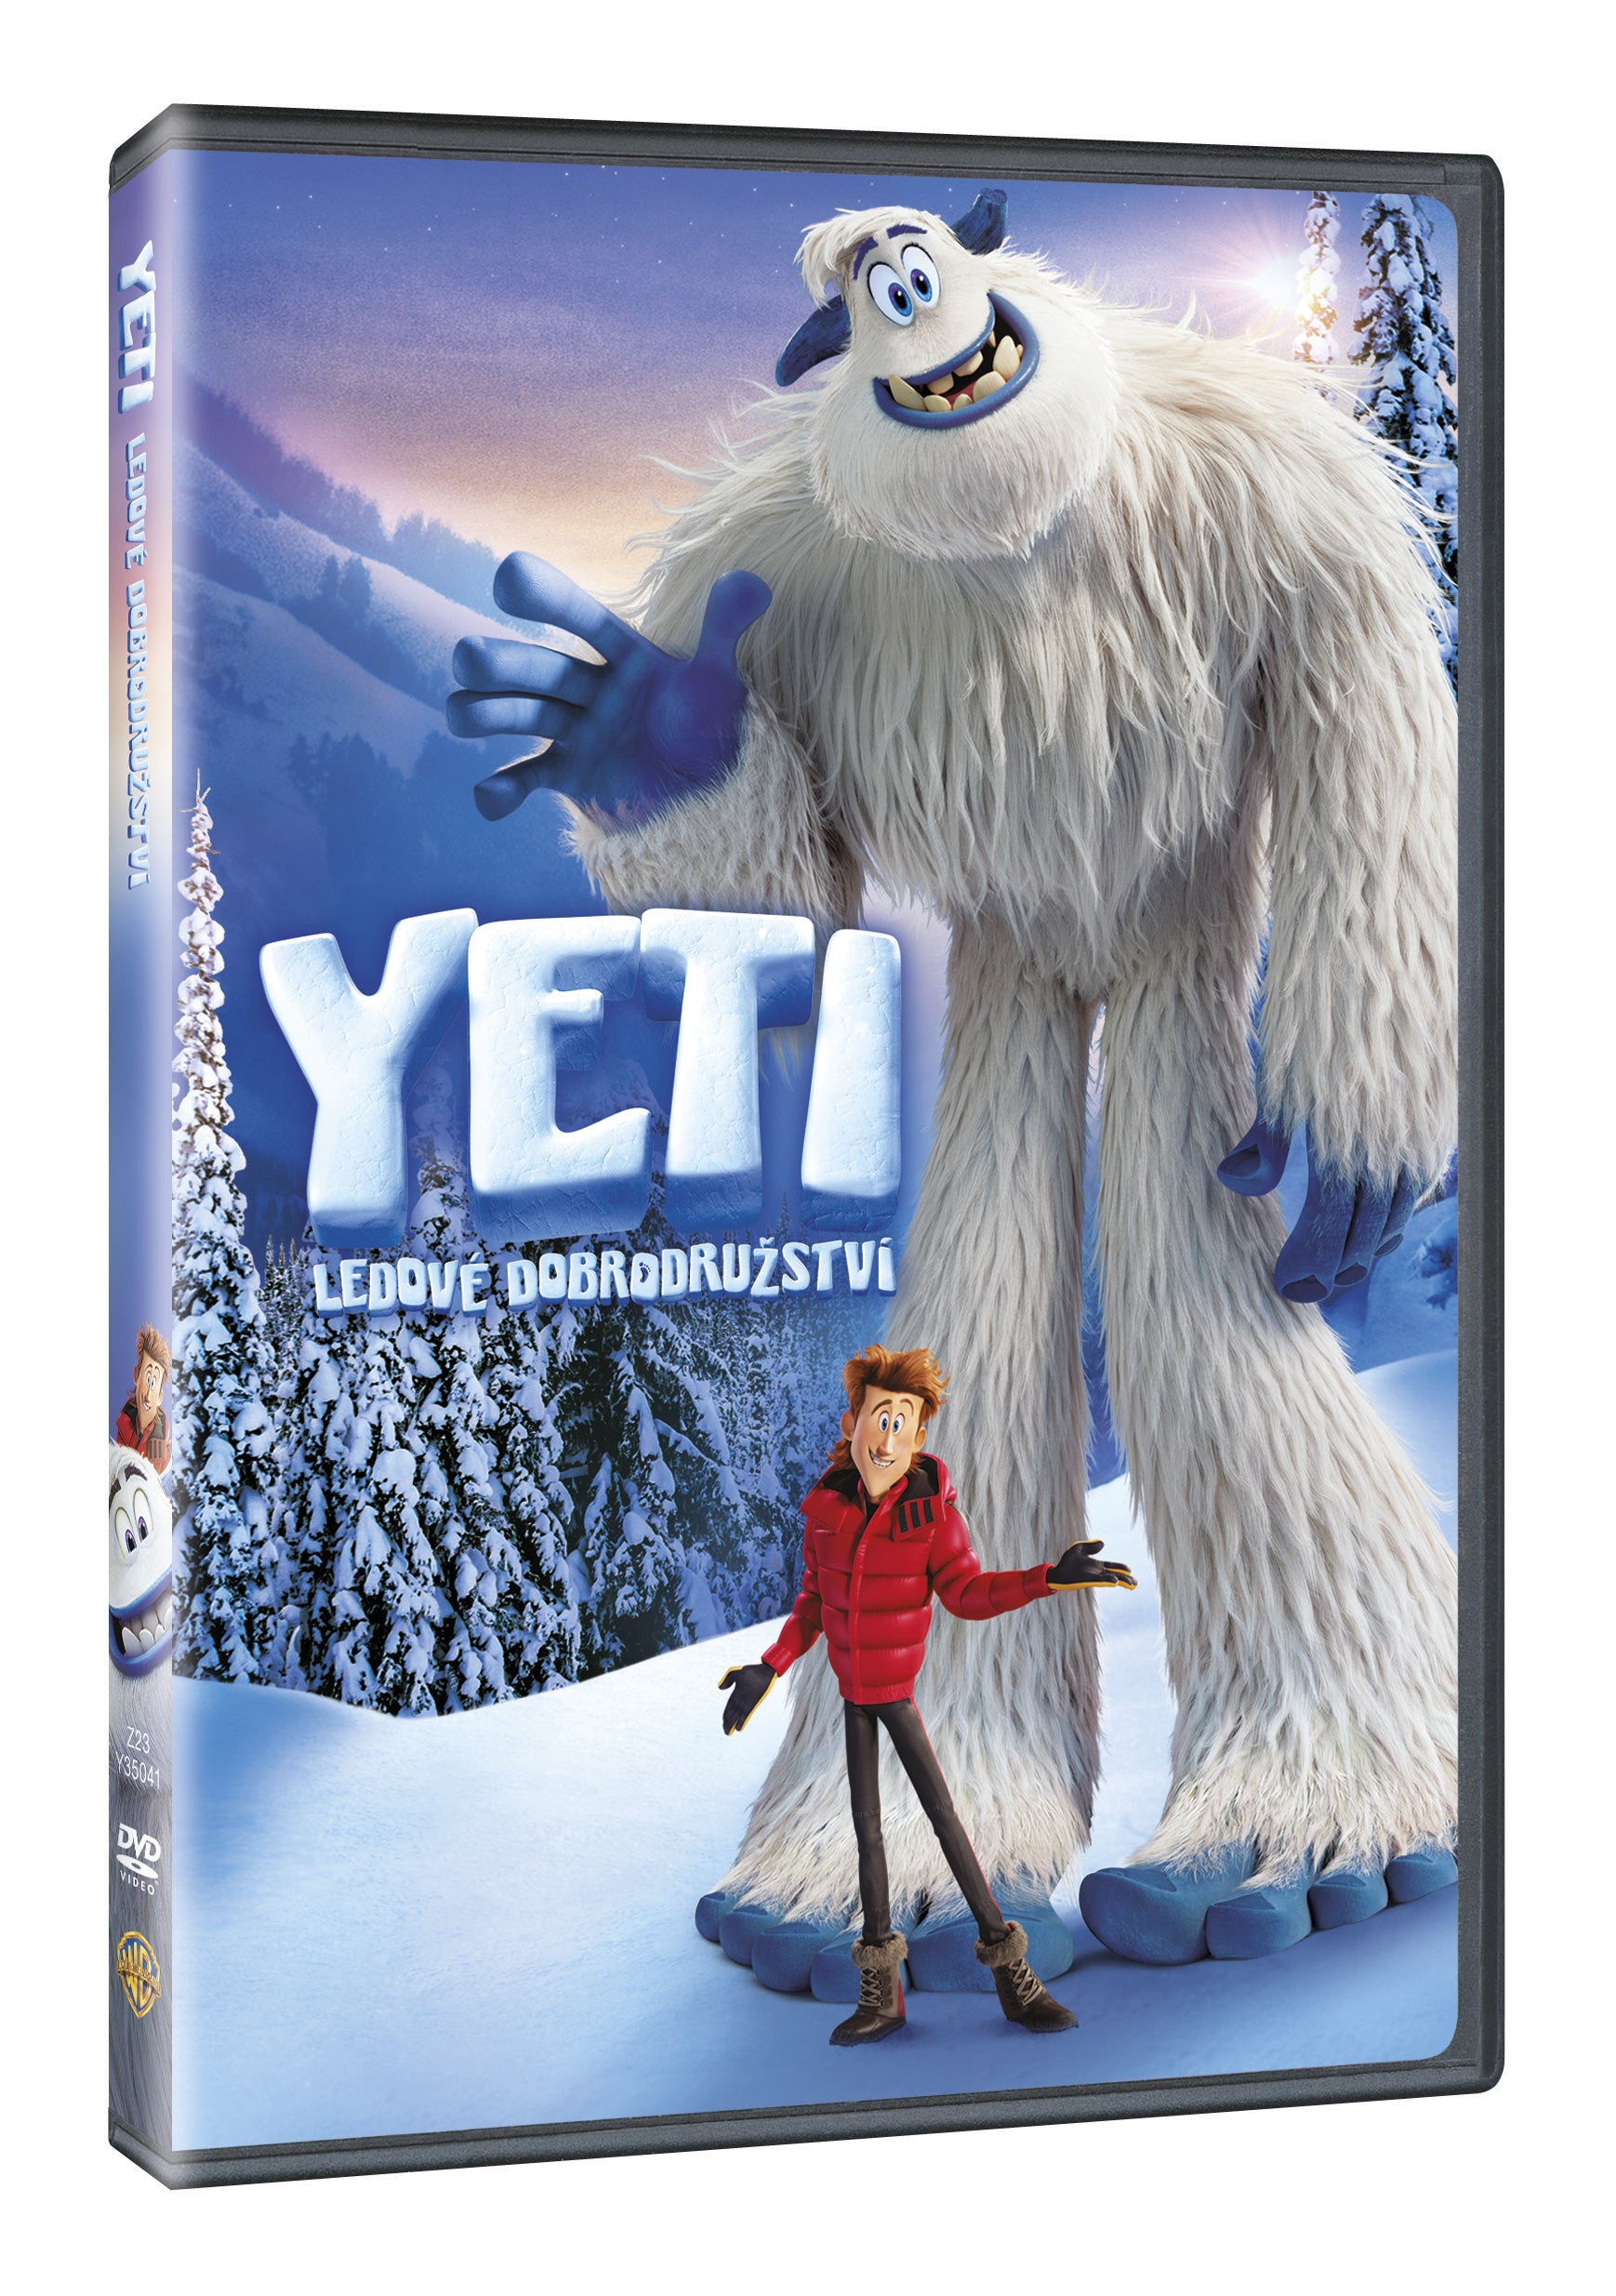 Yeti: Ledove dobrodruzstvi DVD / Smallfoot